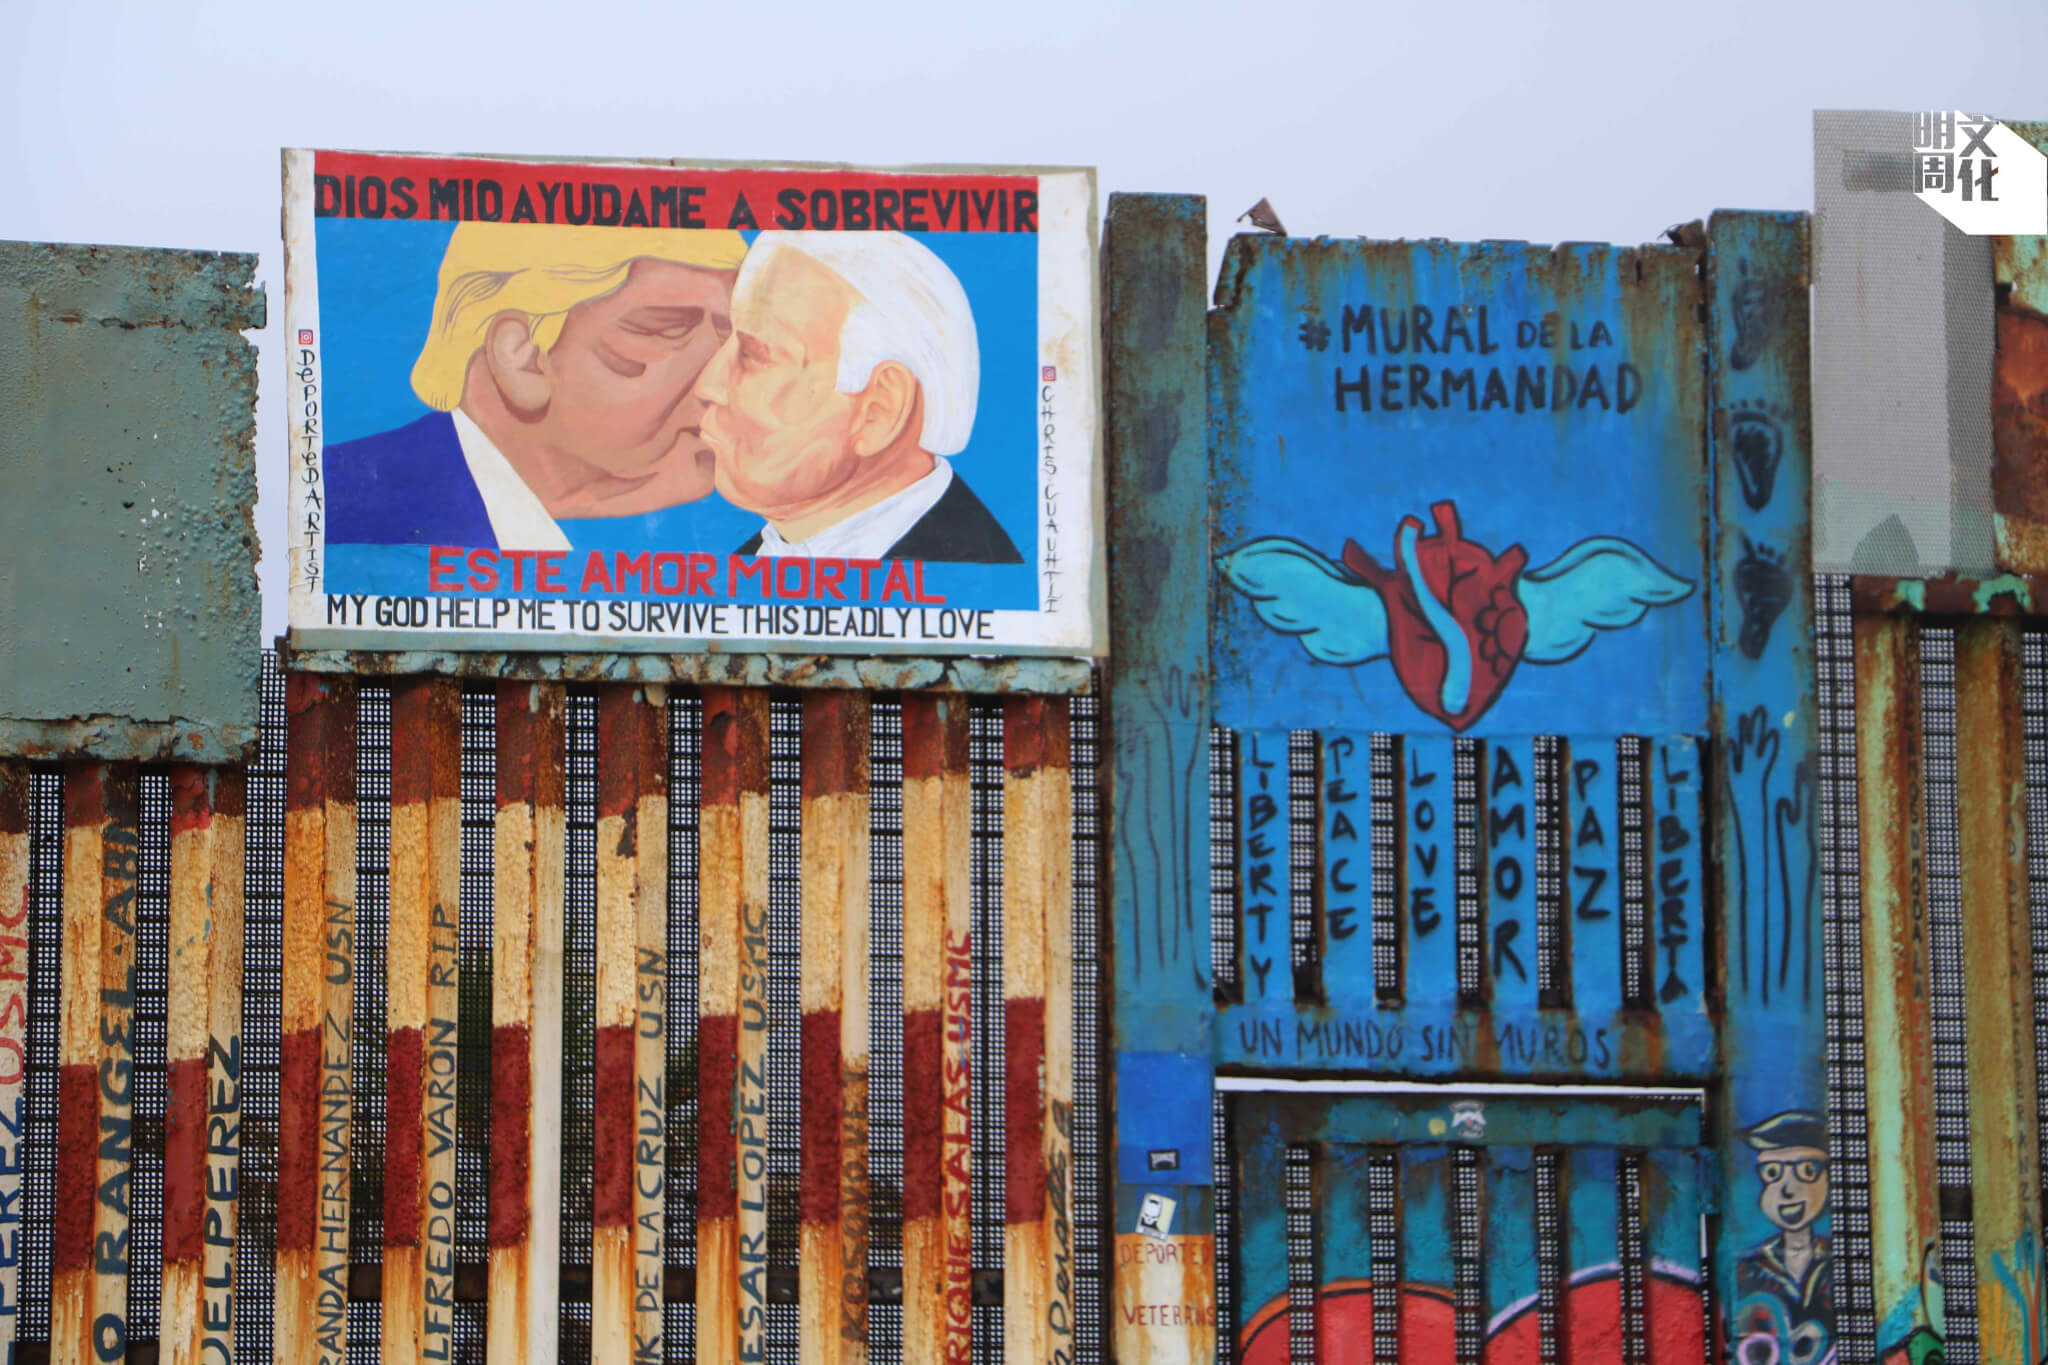 蒂華納邊境圍牆上有一幅特朗普與拜登親吻的壁畫，參照柏林圍牆 經典塗鴉《我的上帝，助我在這致命之愛中存活》，以東德共產政權 的專橫，諷刺拜登重啟特朗普的圍牆工程。